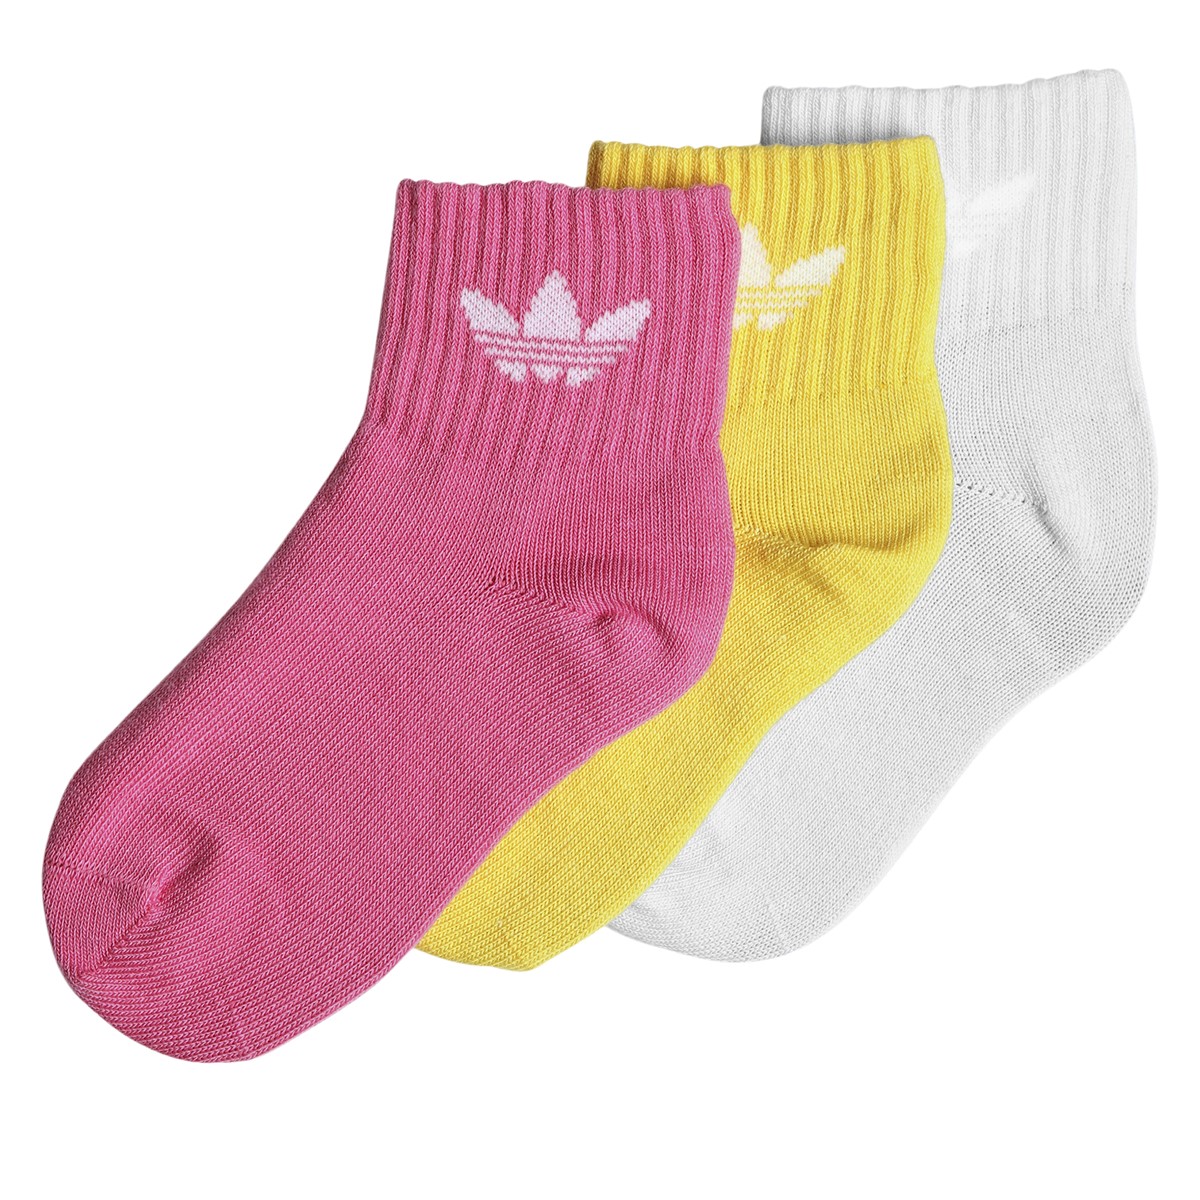 Paquet de 3 paires de chaussettes mi-mollet mauves, roses et jaunes pour enfants